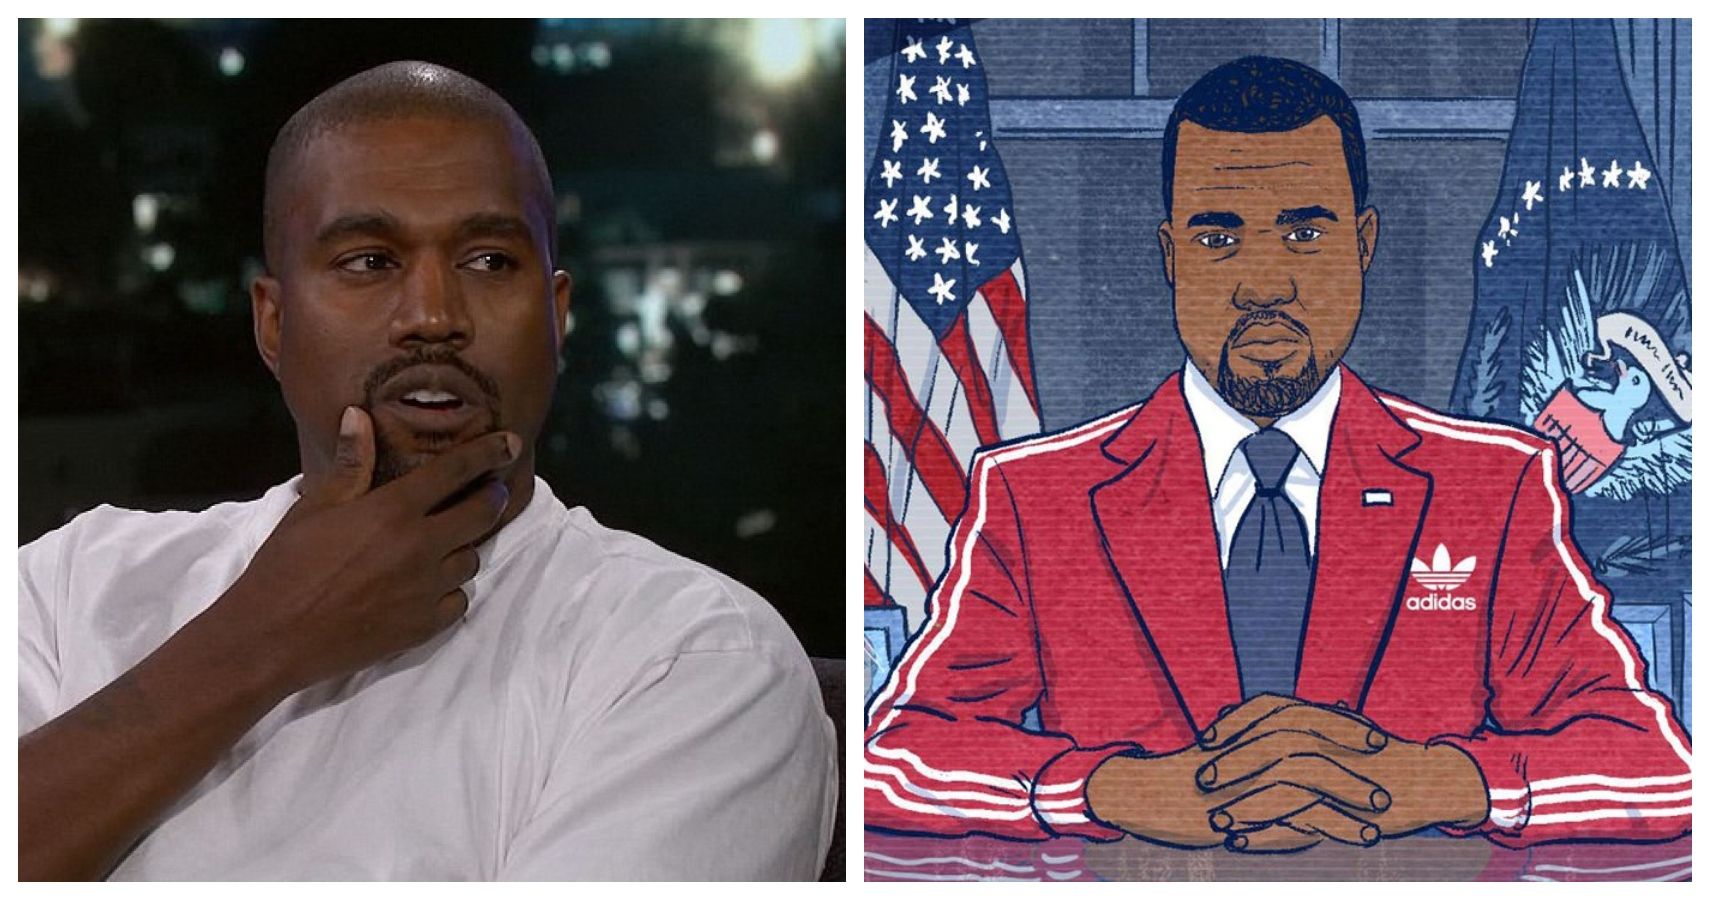 Melhores reações no Twitter à candidatura de Kanye West à presidência